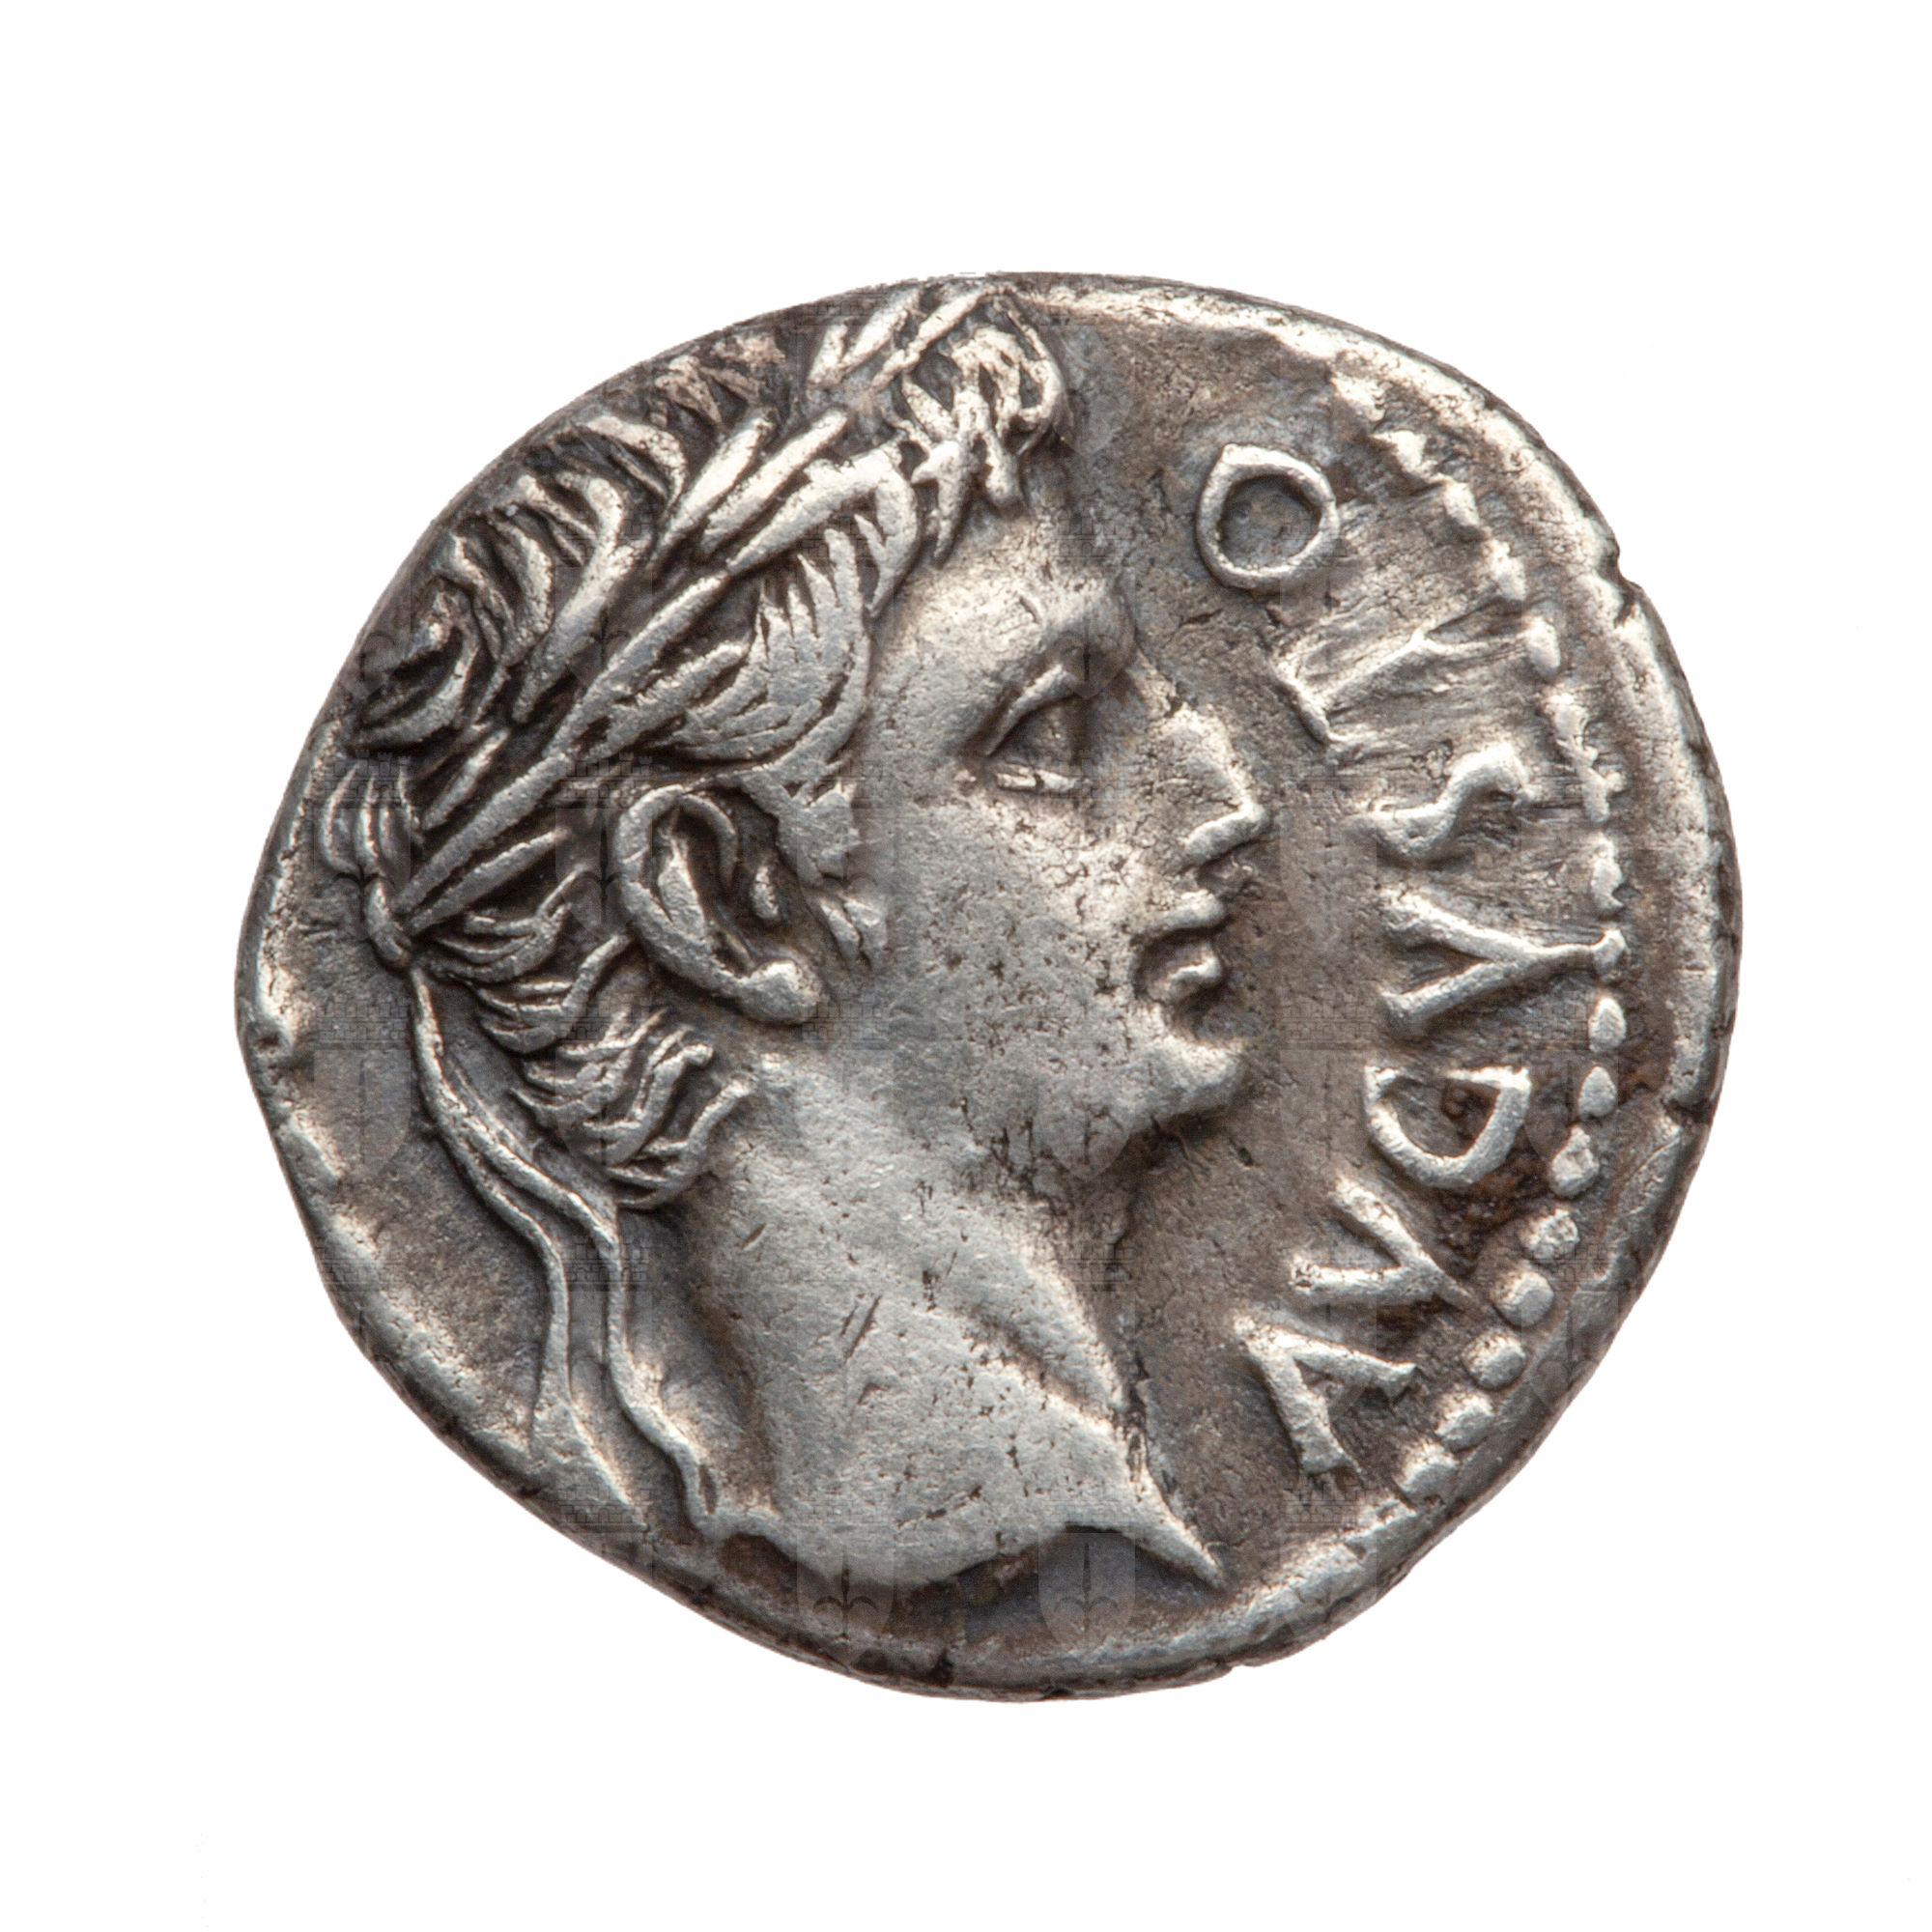 https://catalogomusei.comune.trieste.it/samira/resource/image/reperti-archeologici/Roma 21a D augusto.jpg?token=65e6b8e0a6264